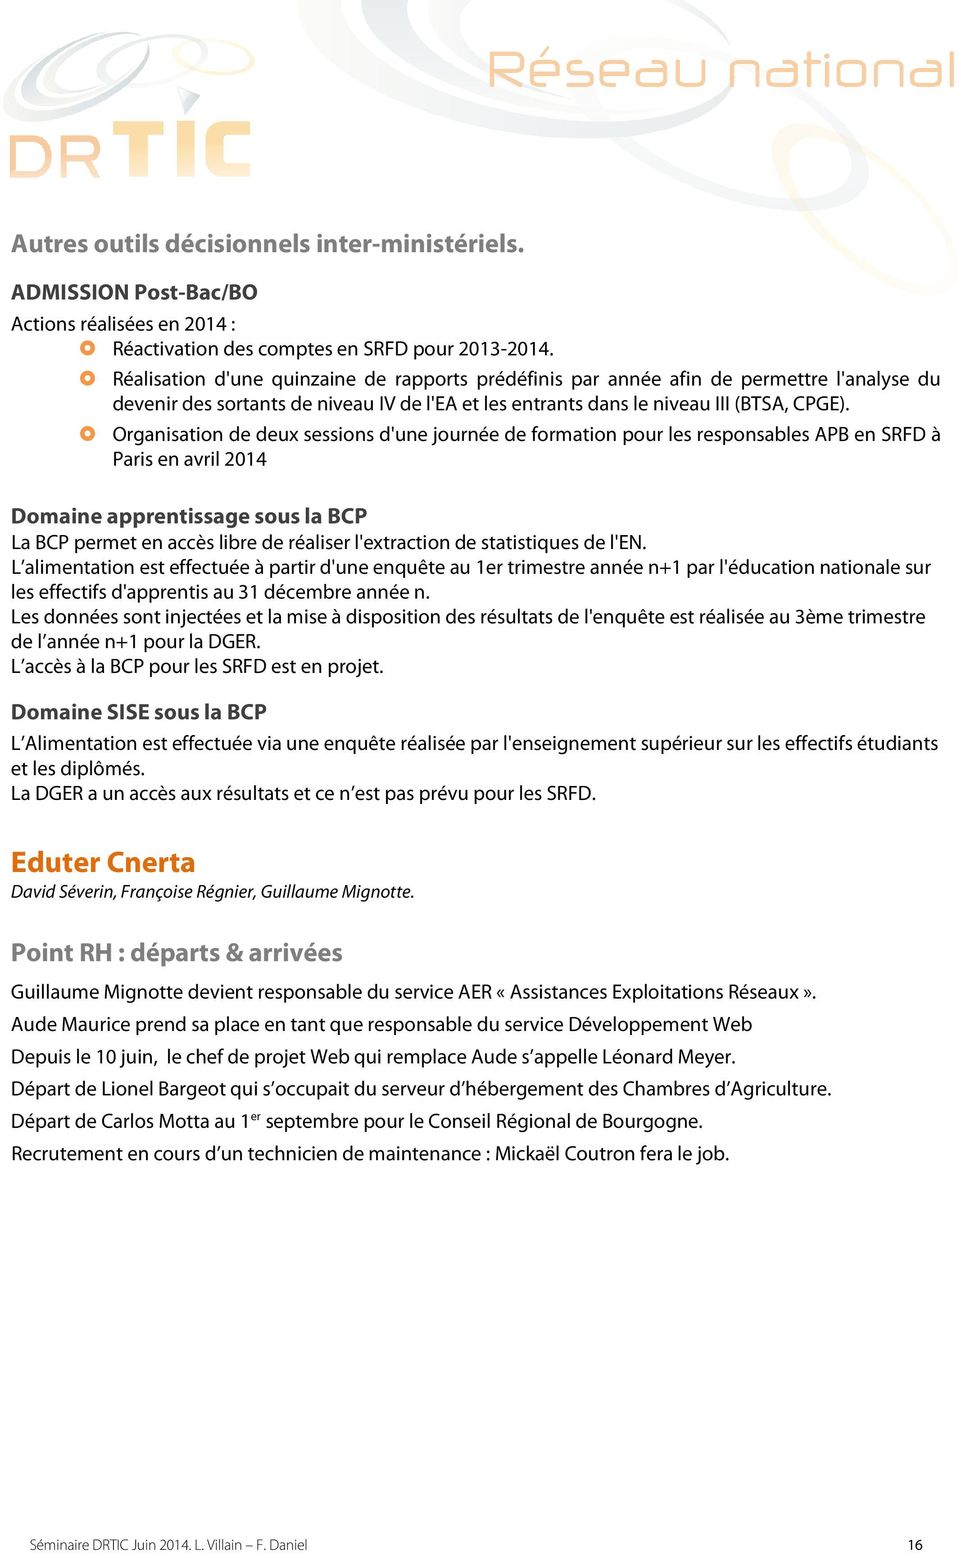 Organisation de deux sessions d'une journée de formation pour les responsables APB en SRFD à Paris en avril 2014 Domaine apprentissage sous la BCP La BCP permet en accès libre de réaliser